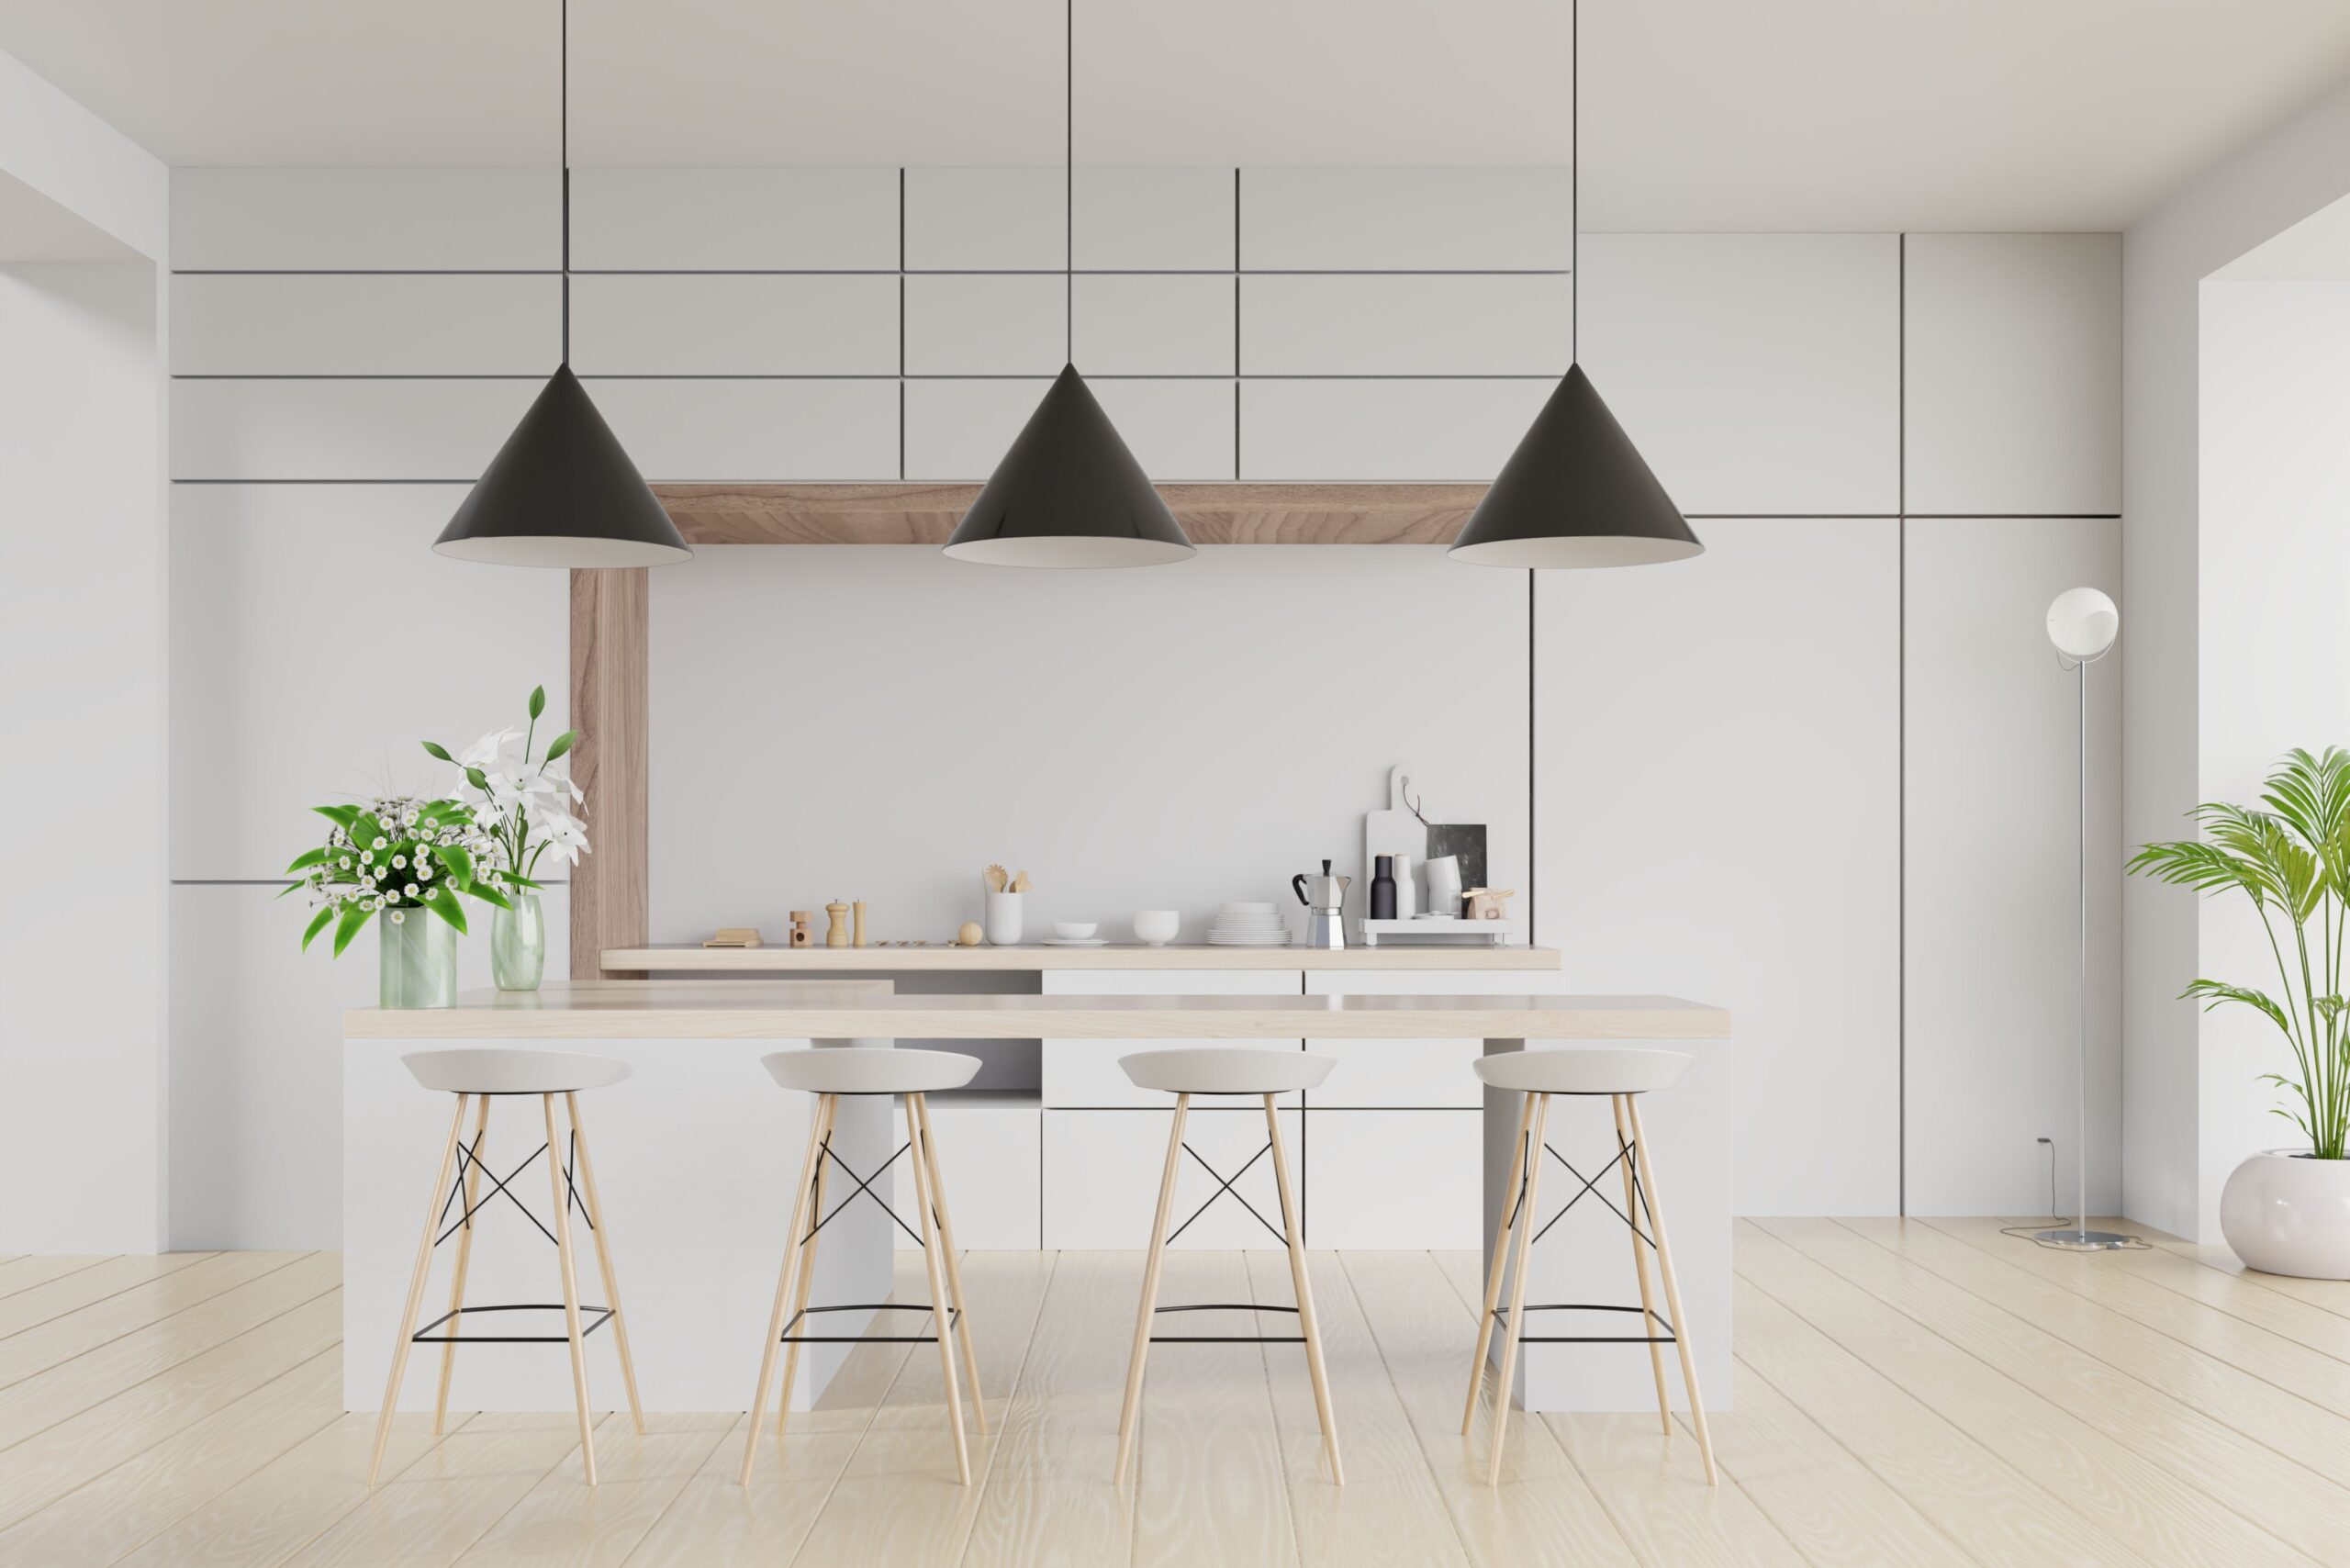 Modern kitchen furniture design